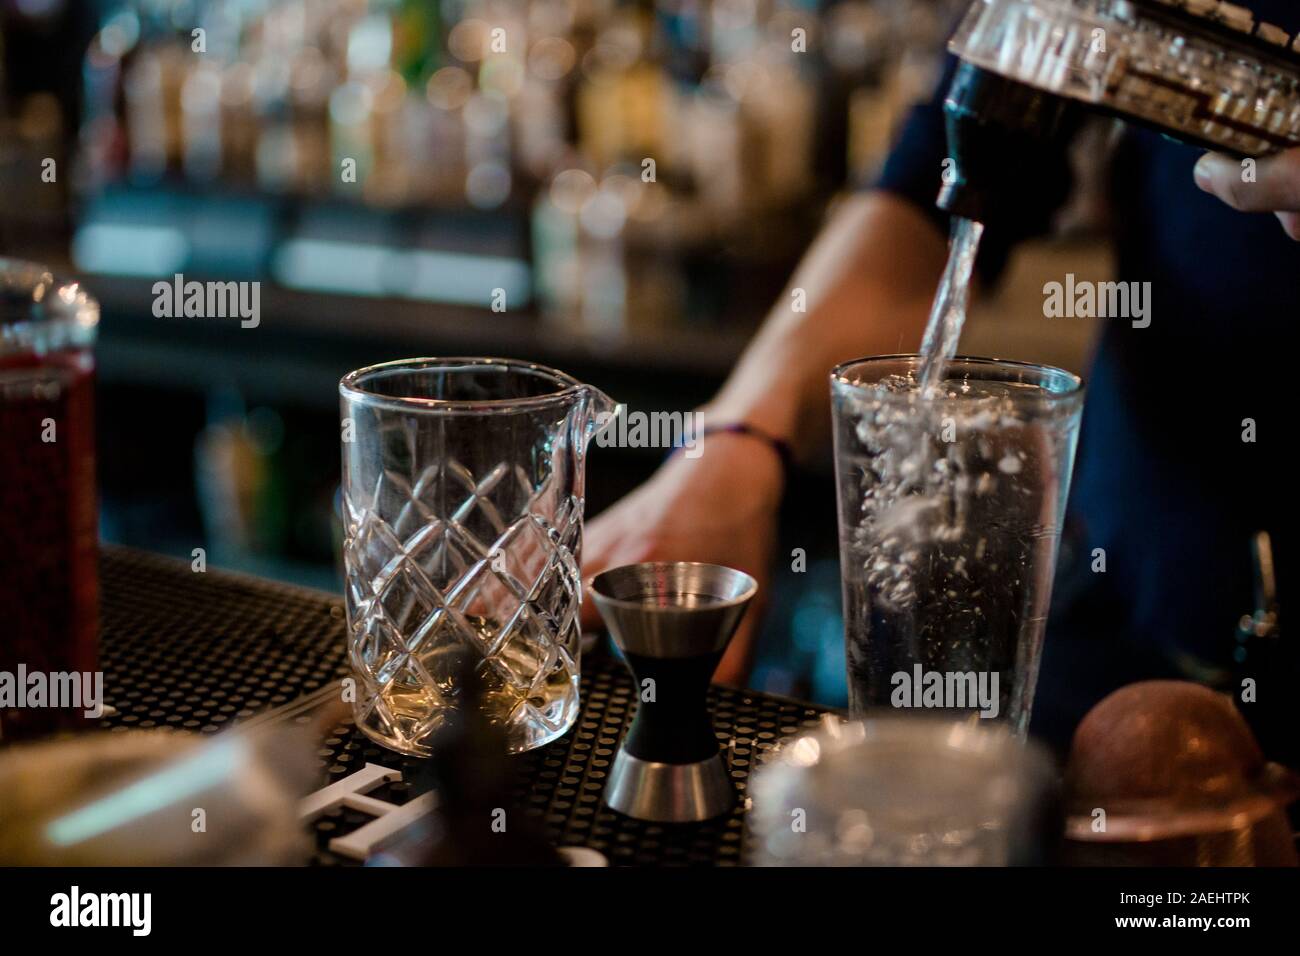 Un barman utilise un distributeur de soda soda pour verser dans un verre dans un bar Banque D'Images